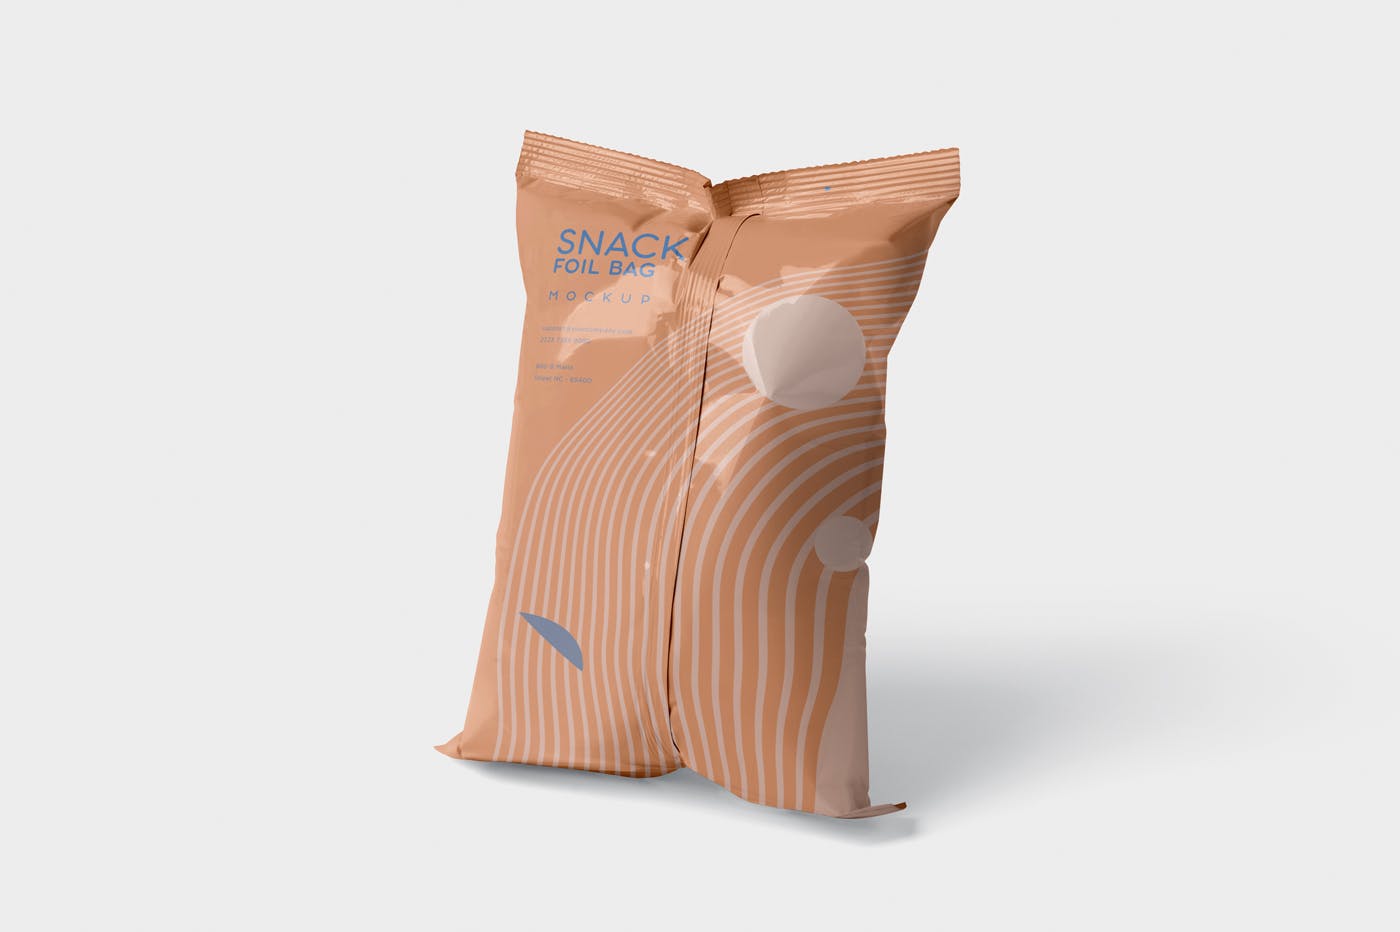 小吃零食铝箔袋/塑料包装袋设计图非凡图库精选 Snack Foil Bag Mockup – Plastic插图(2)